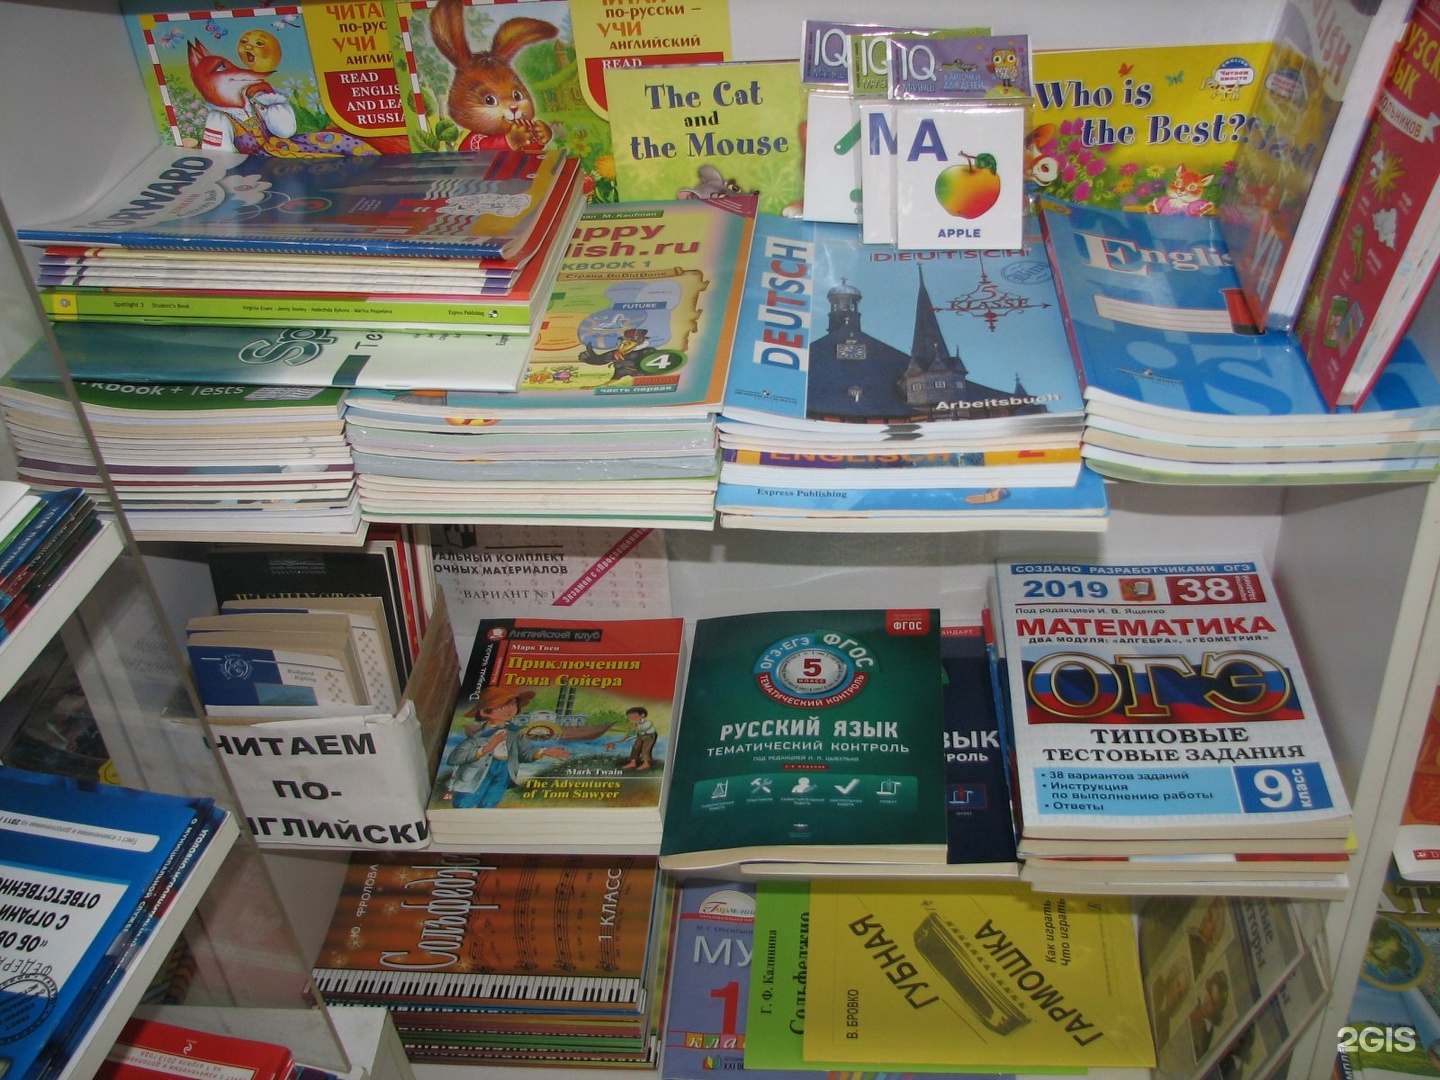 Книжный магазин умник.г.Саранск.фото. Аптека дружбы народов